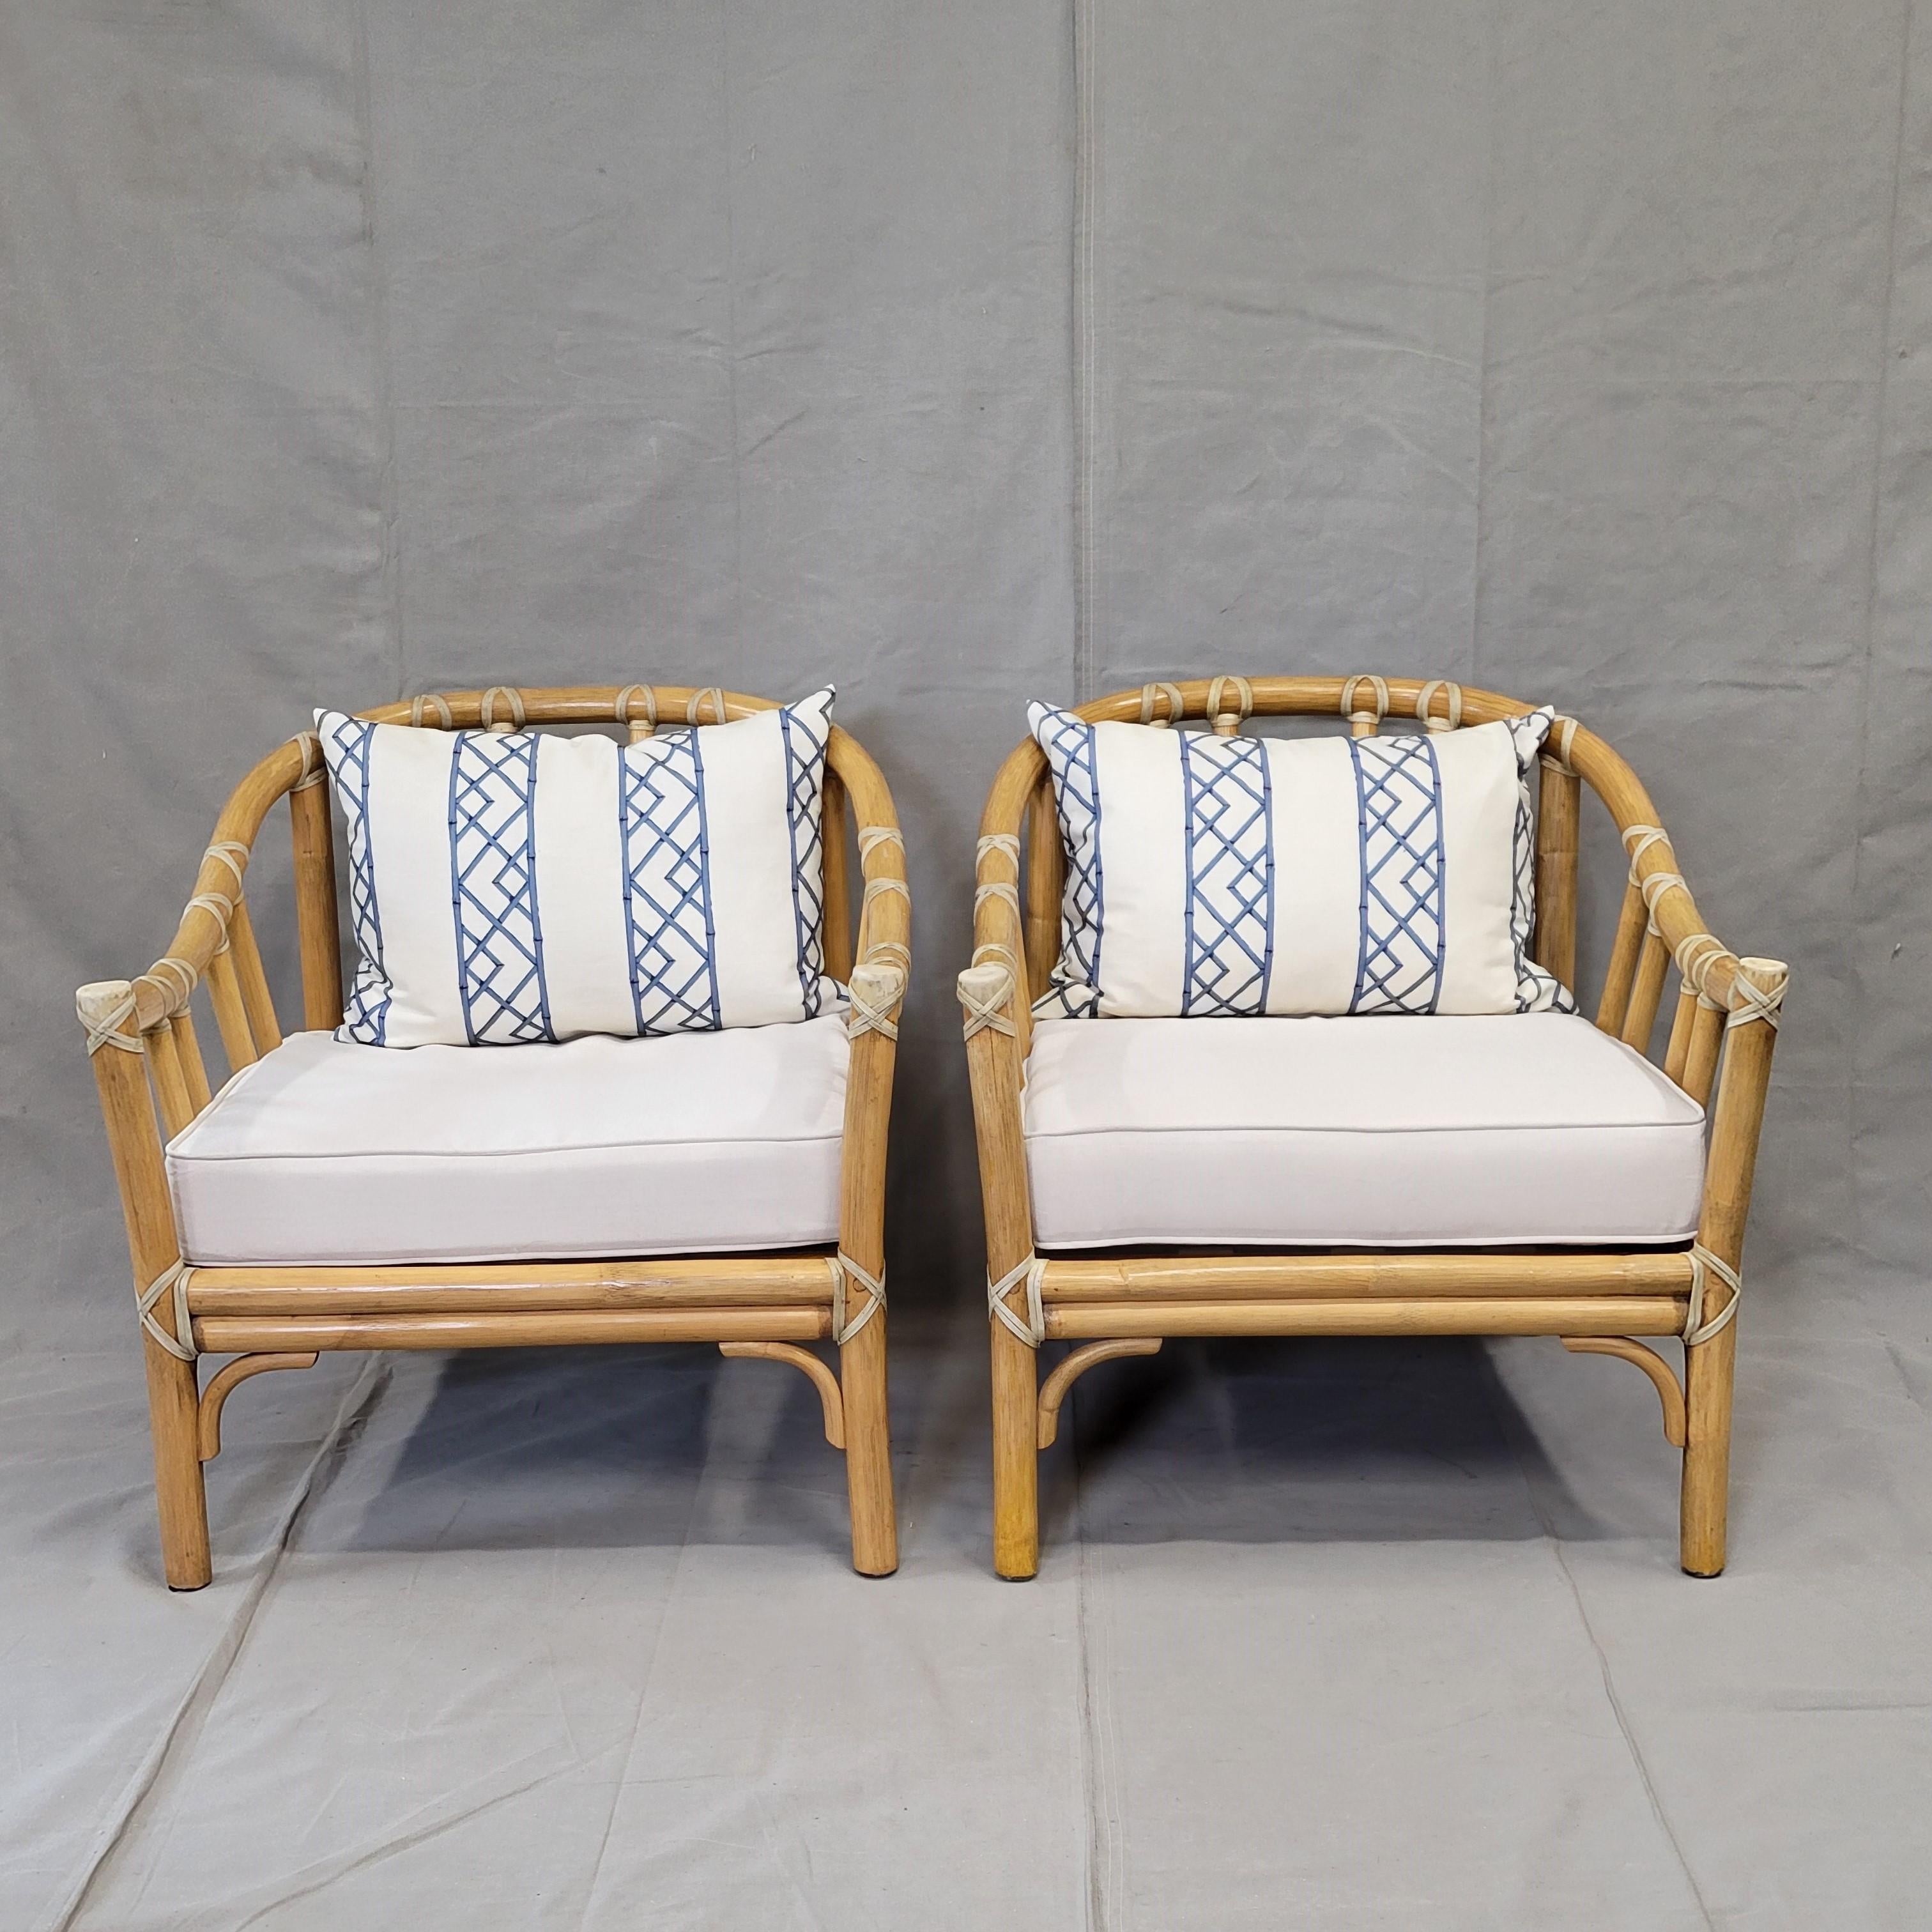 Ein einfach atemberaubendes Paar klassischer, moderner McGuire Bambus-Lounge-Stühle aus der Mitte des Jahrhunderts von 1978 mit dem McGuire-Markenzeichen, der Rohhautbindung. Arme und Füße zeigen Gebrauchsspuren, siehe Fotos, aber insgesamt in gutem